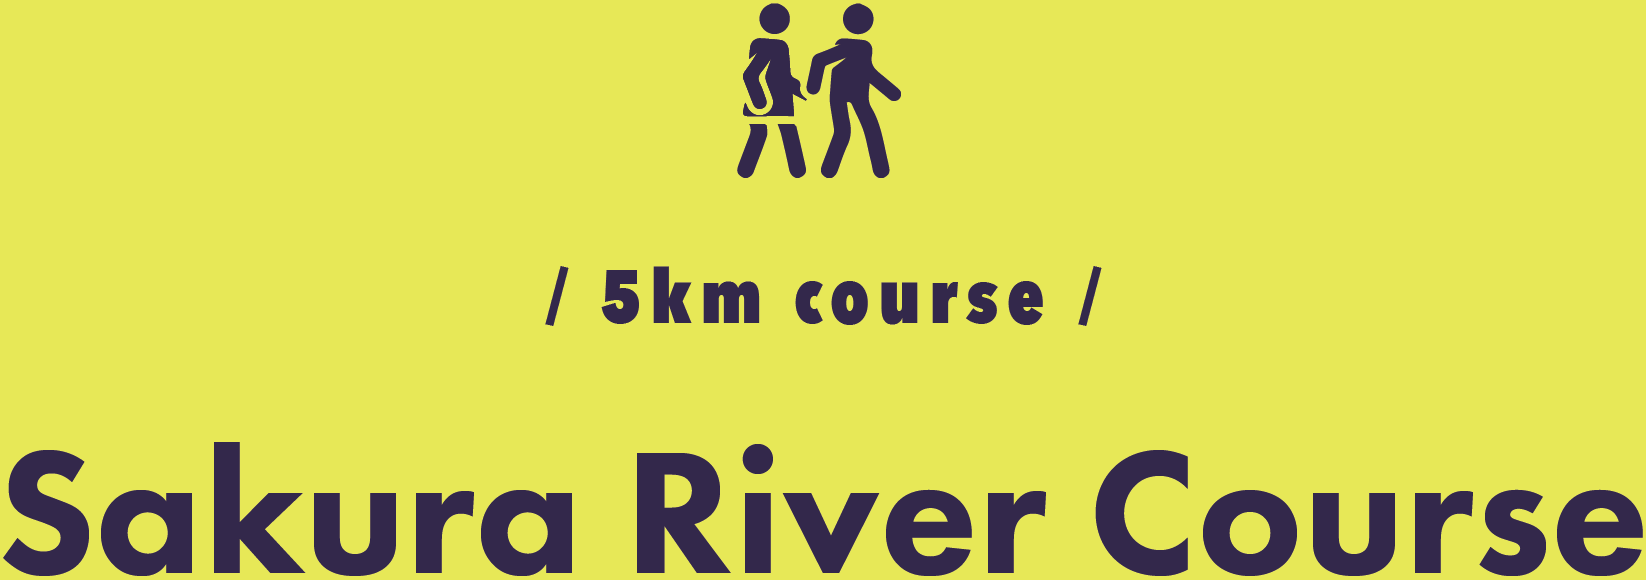 / 5km course / Sakura River Course